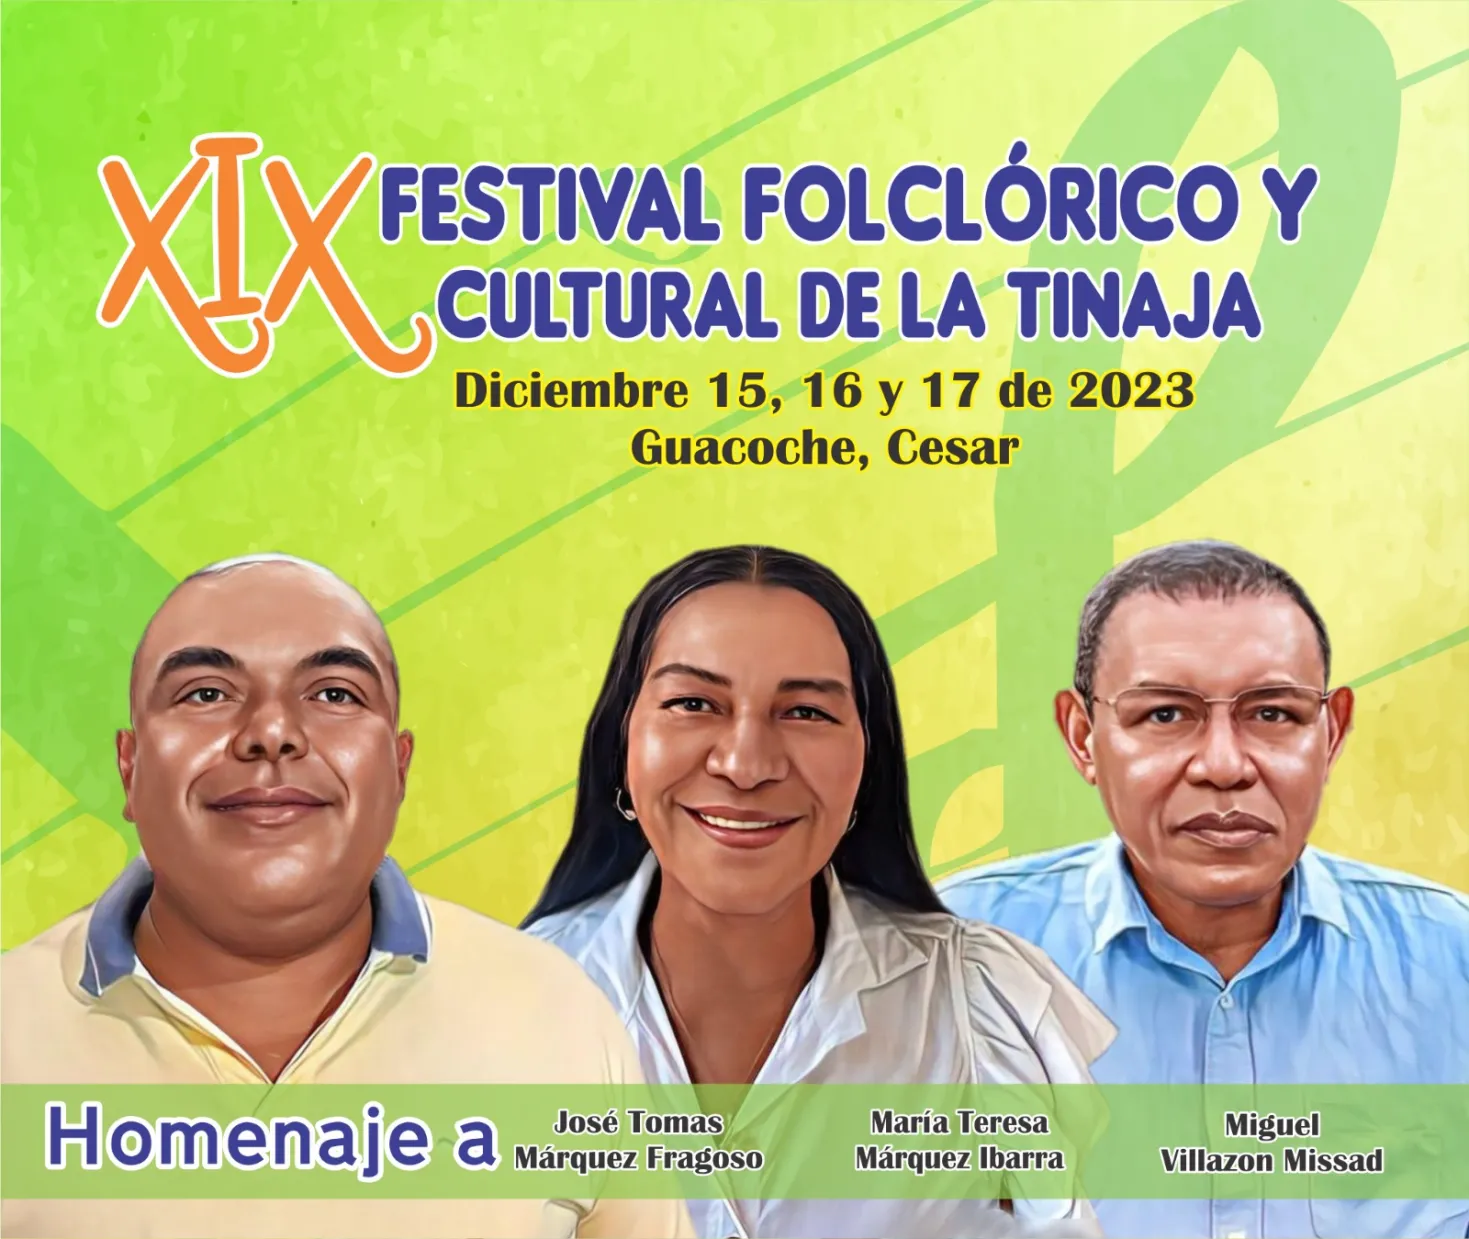 Este fin de semana Guacoche vivirá la versión 19 del Festival de La Tinaja